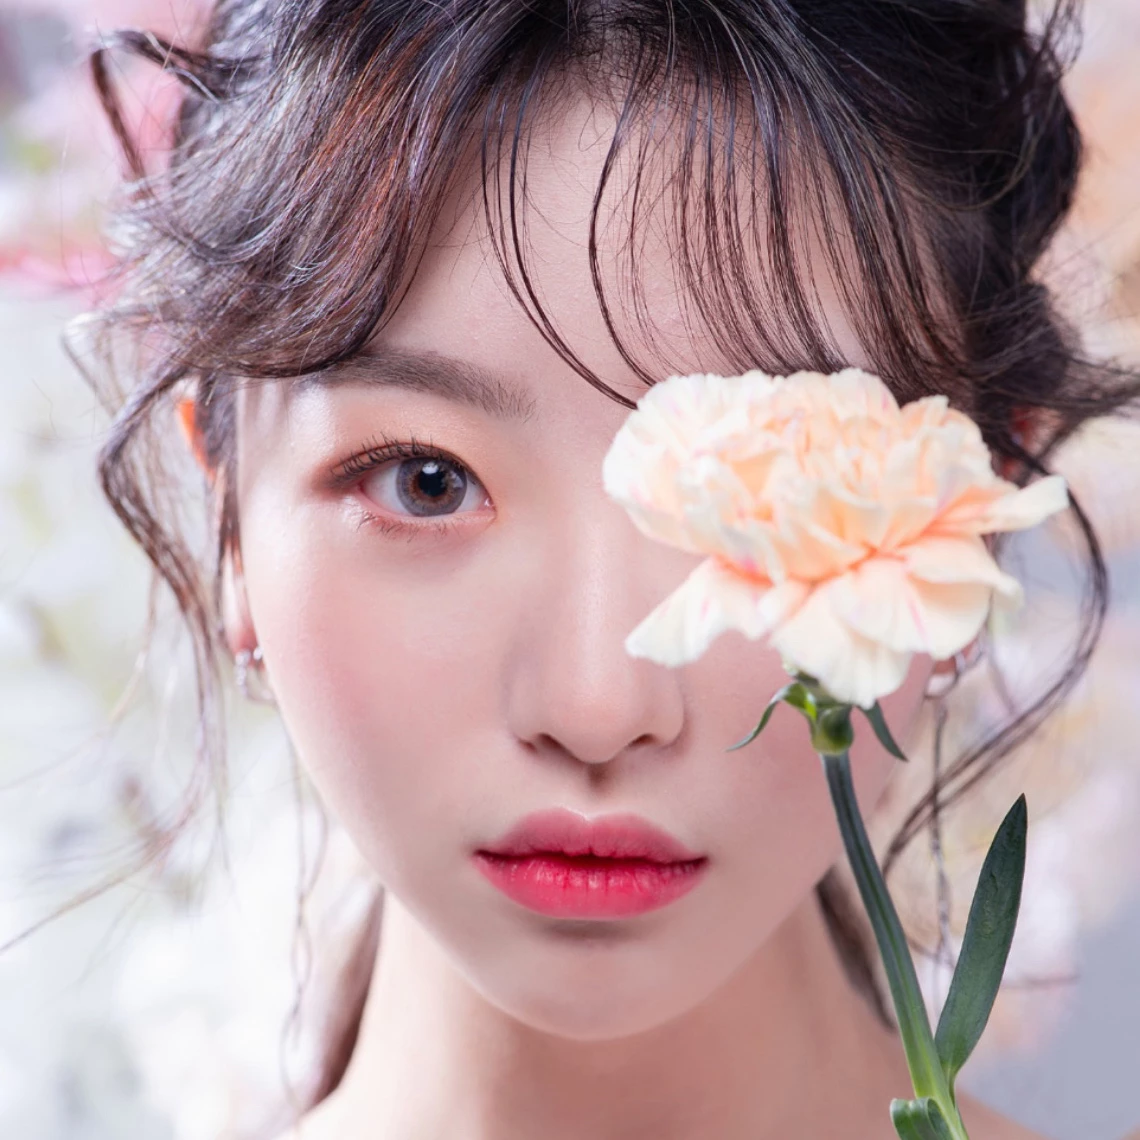 精彩的整形手术 韩国漂亮的韩国女孩用鲜花遮住一只眼睛